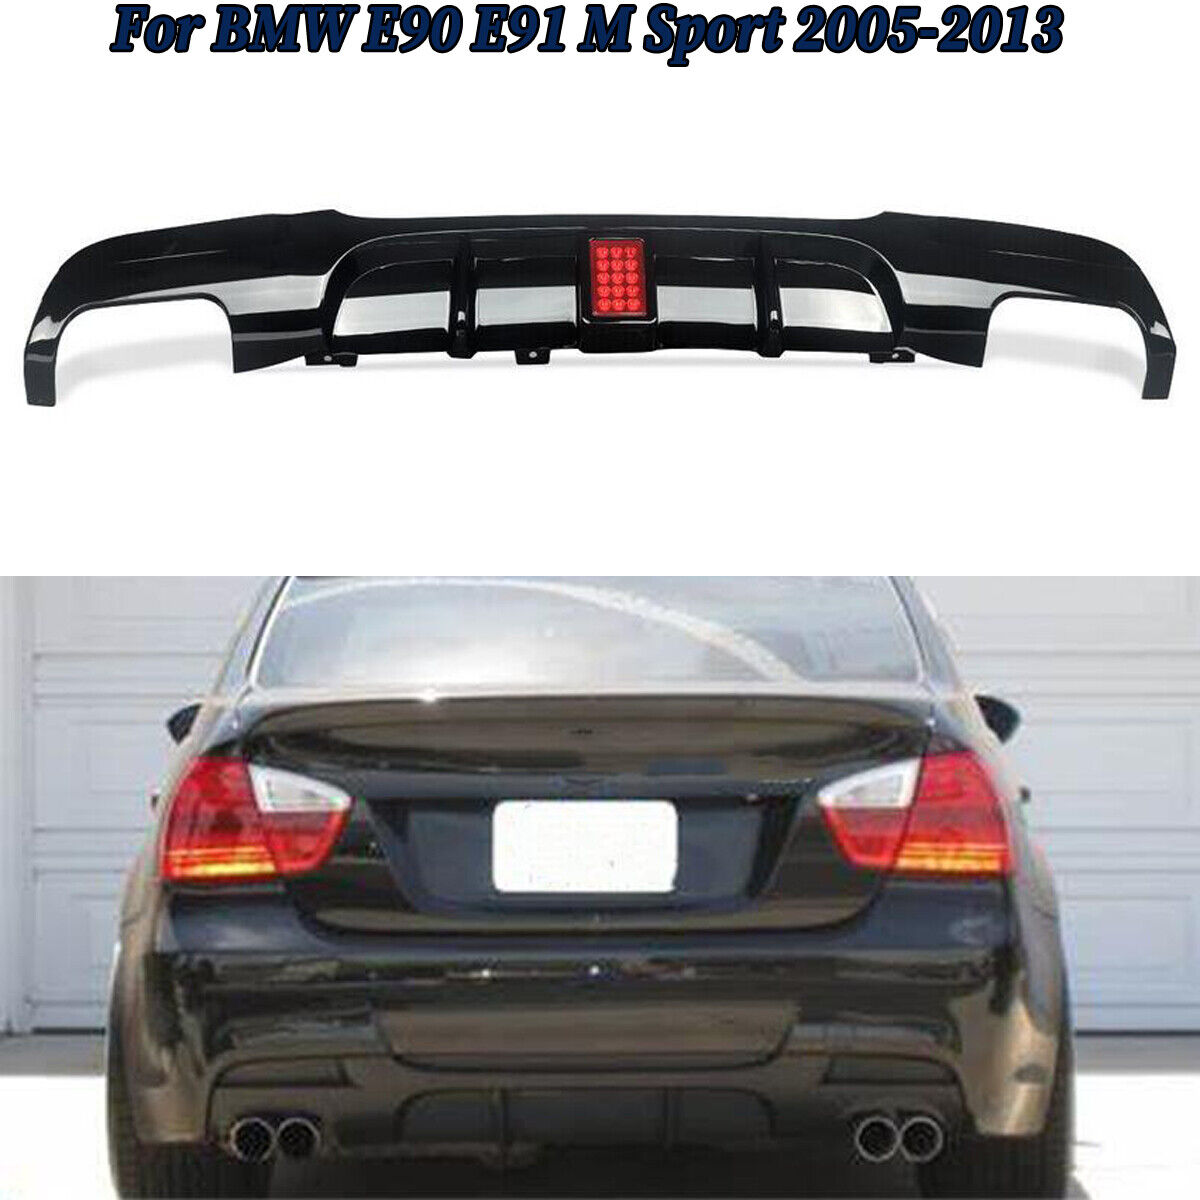 For BMW E90 E91 M Sport Bumper Rear Diffuser Spoiler Lip M Look Gloss Black 05+